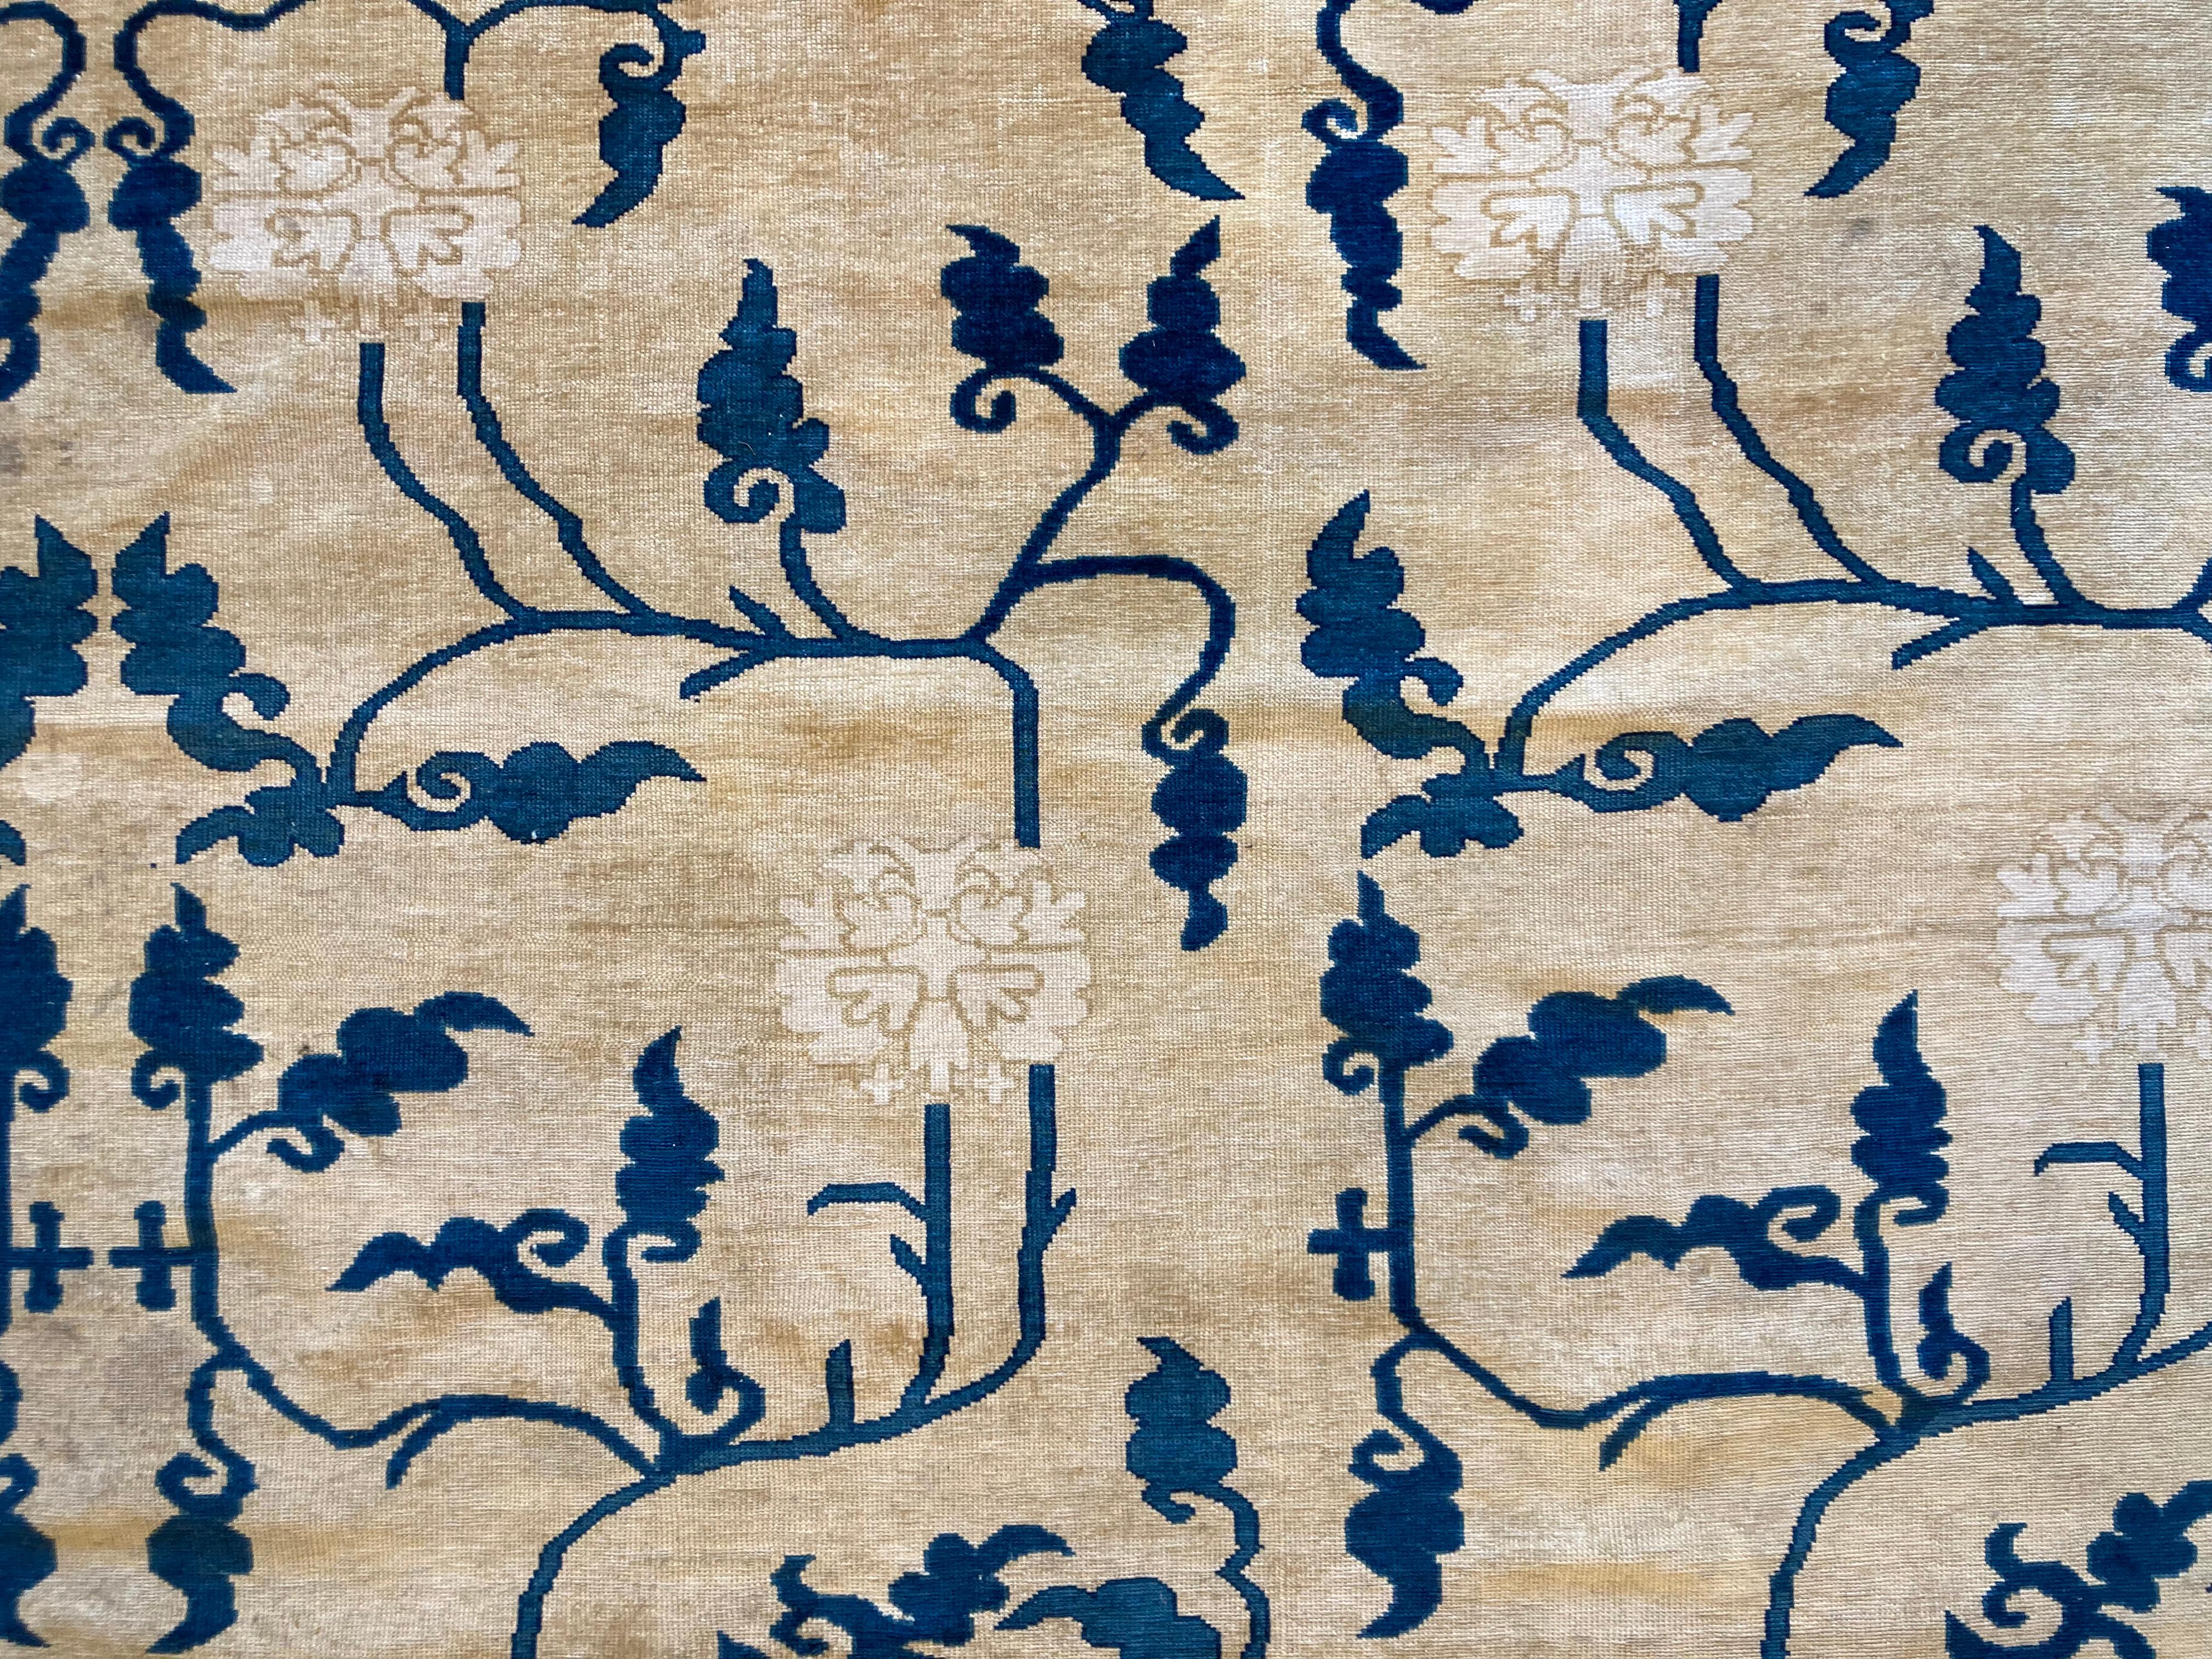 Alfombra china realizada en el siglo XX basada en los cartones de alfombras del XVIII con la misma técnica.
Sa décoration se base sur un enrejado de peonias, ramas estilizadas y hojas, en varios tonos de azul, todo ello sobre un fondo beige